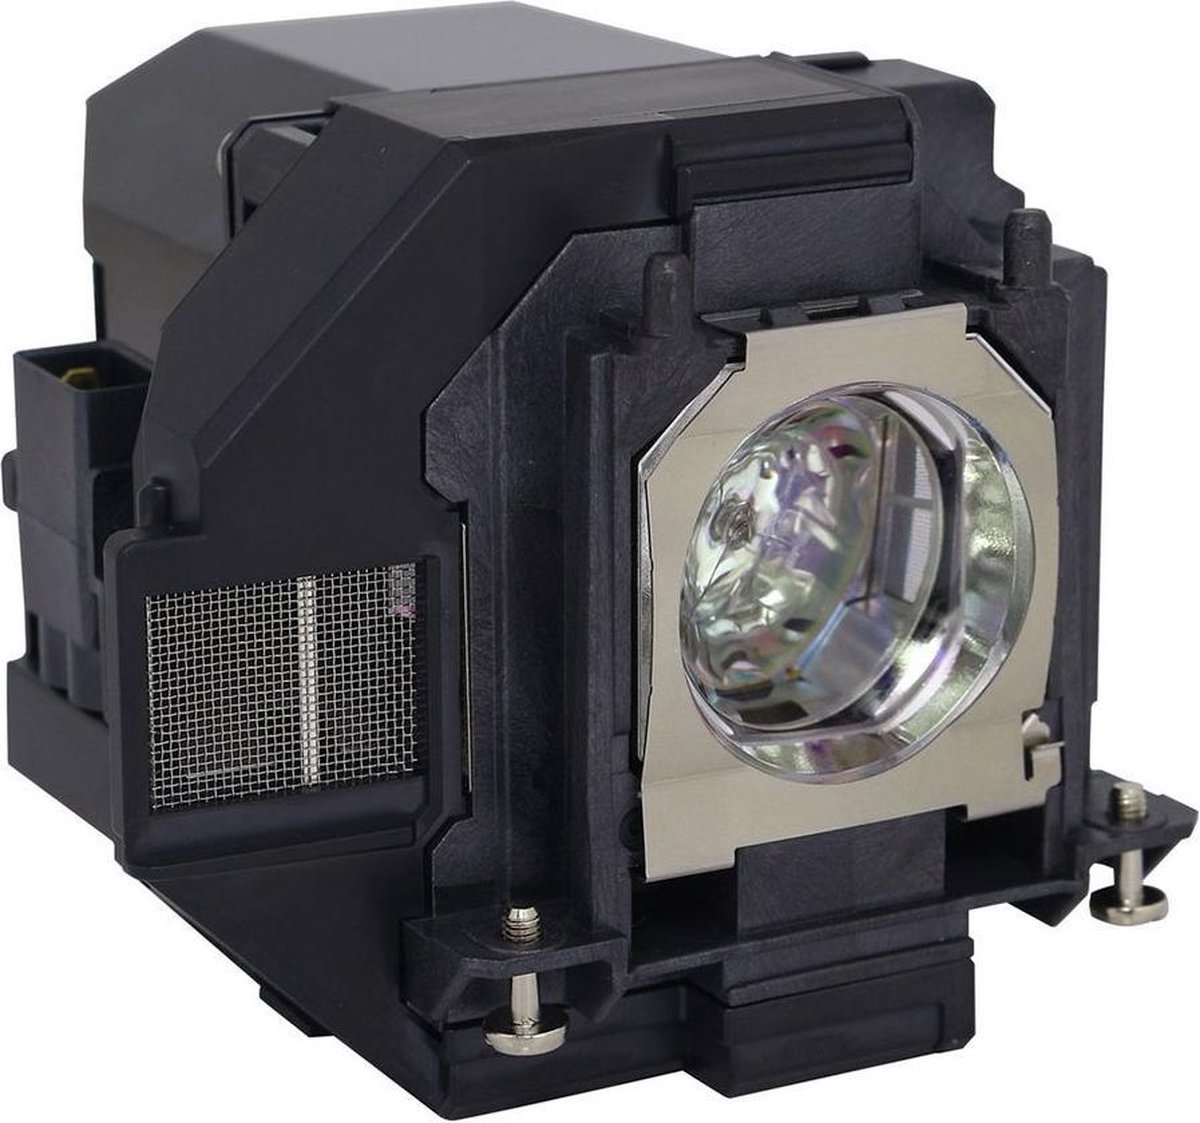 Beamerlamp geschikt voor de EPSON POWERLITE X41+ beamer, lamp code LP96 / V13H010L96. Bevat originele UHP lamp, prestaties gelijk aan origineel.